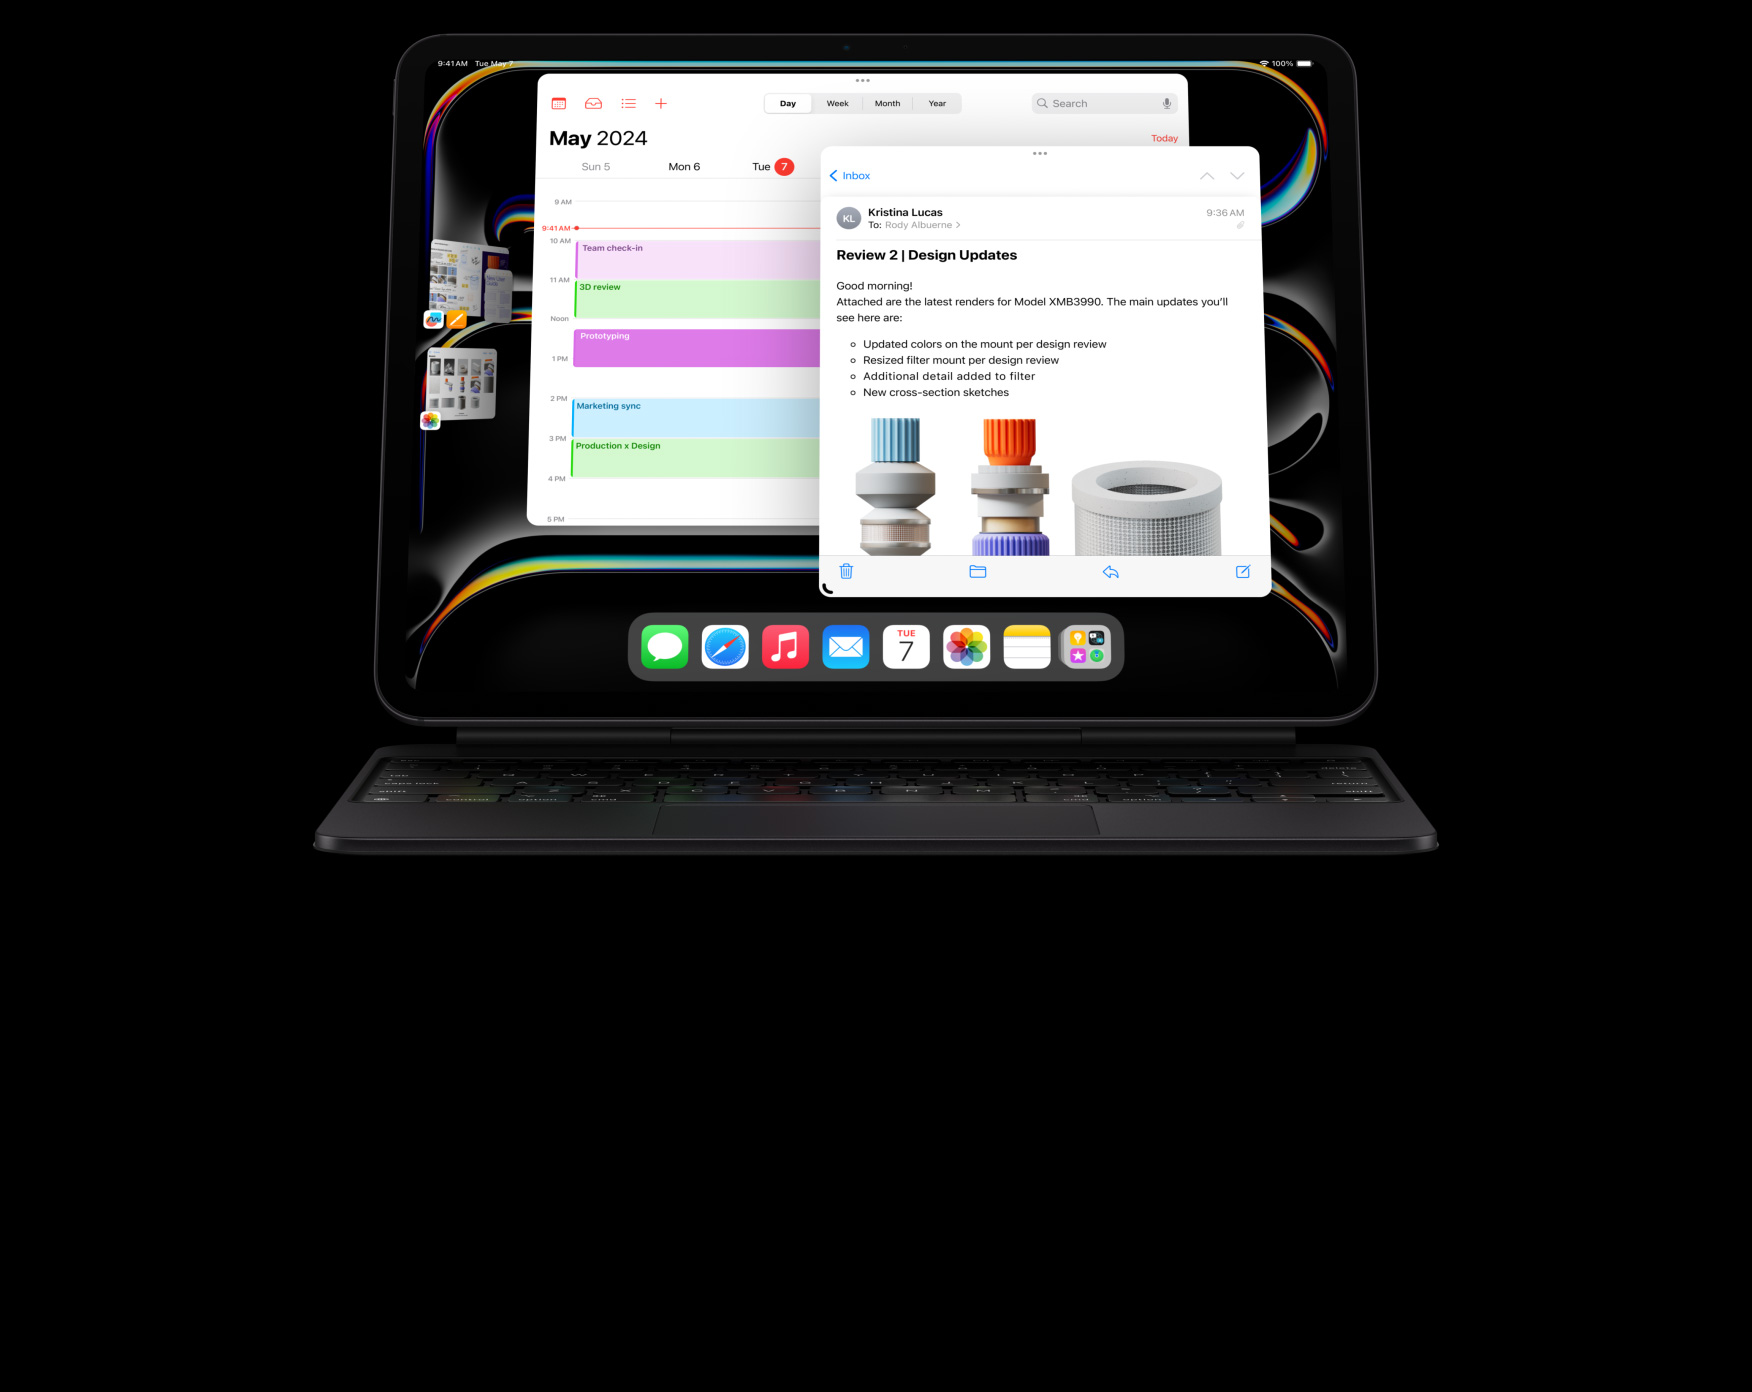 iPad Pro u pejzažnoj orijentaciji s pričvršćenom tipkovnicom Magic Keyboard, korisnik obavlja više zadataka u nekoliko otvorenih aplikacija